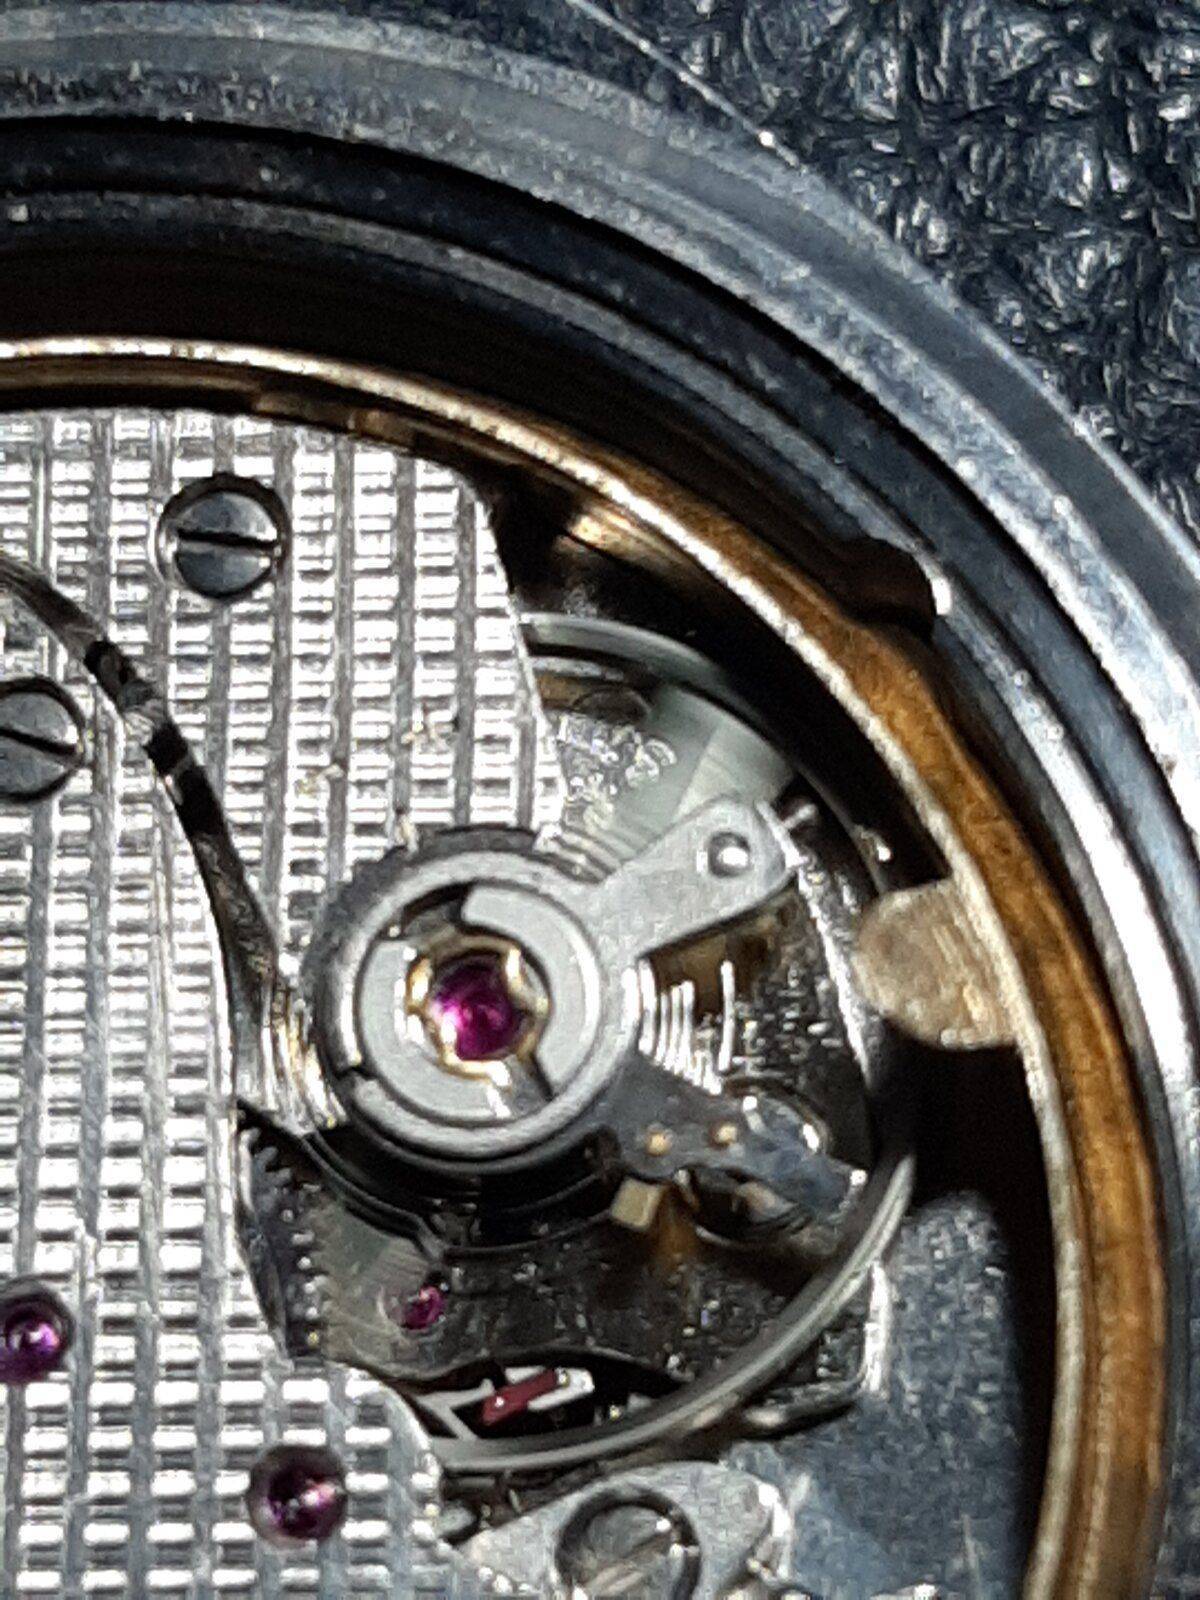 Reloj Courtie automatico, ayuda para identificar calibre. | Relojes  Especiales, EL foro de relojes